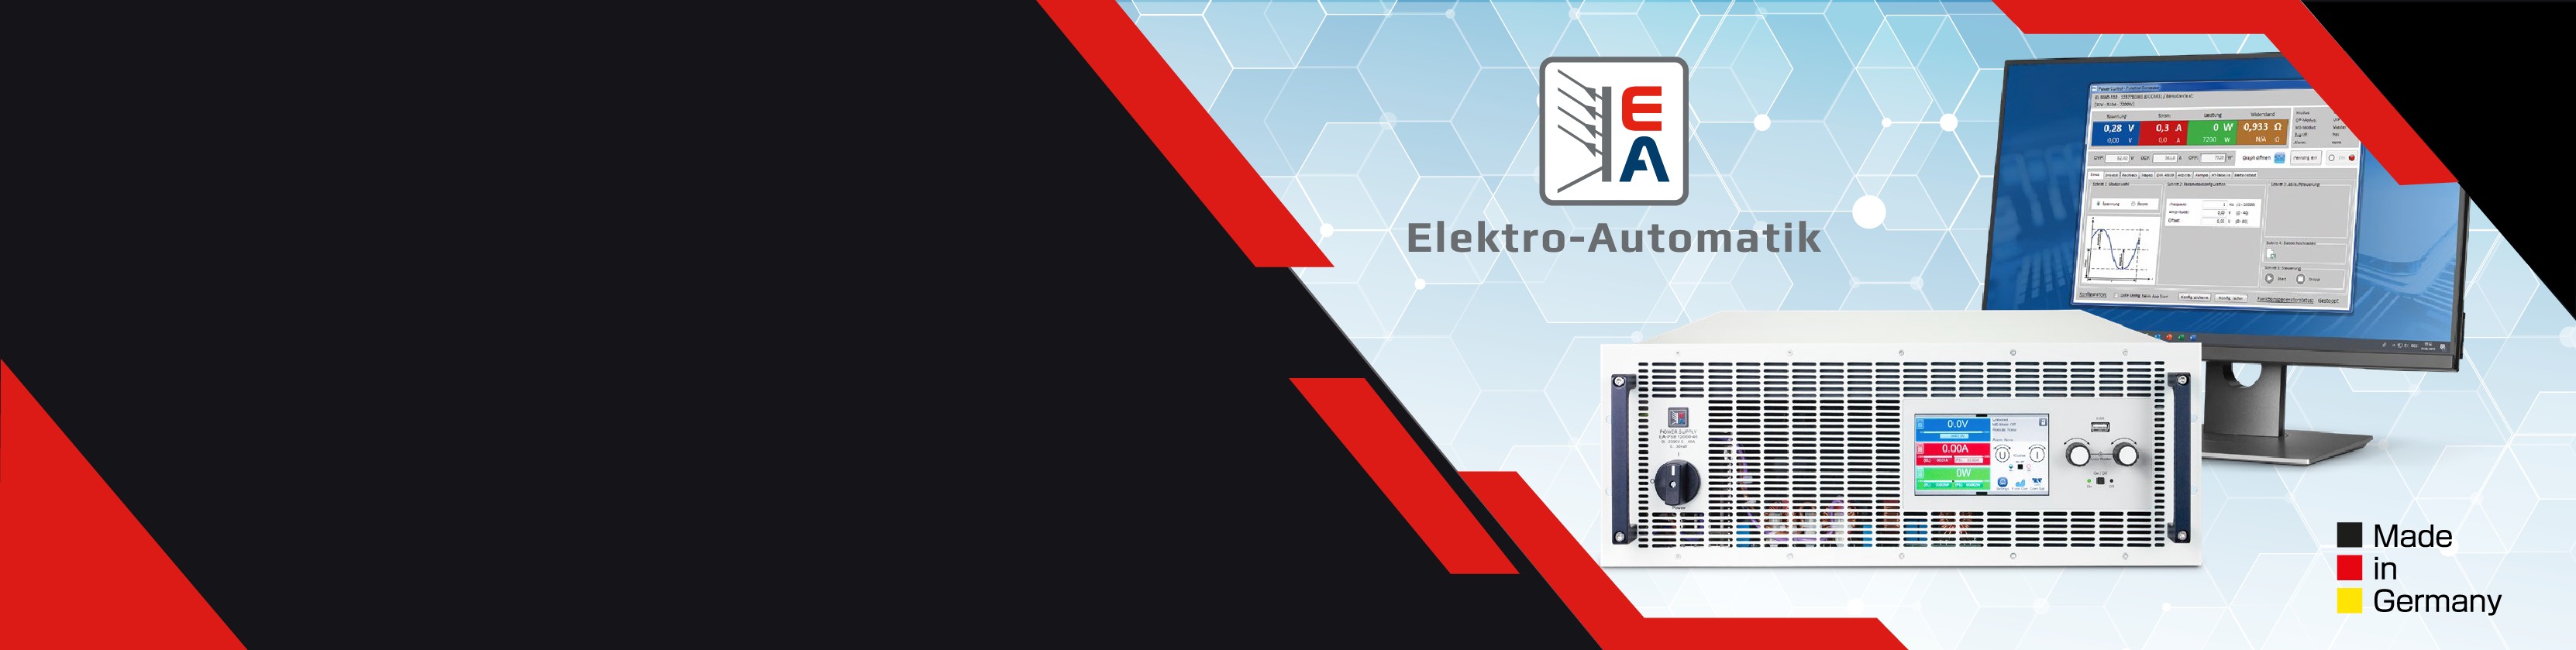 世界標準のプログラマブル直流電源 EA Elektro-Automatik｜理化学計測部｜東陽テクニカ